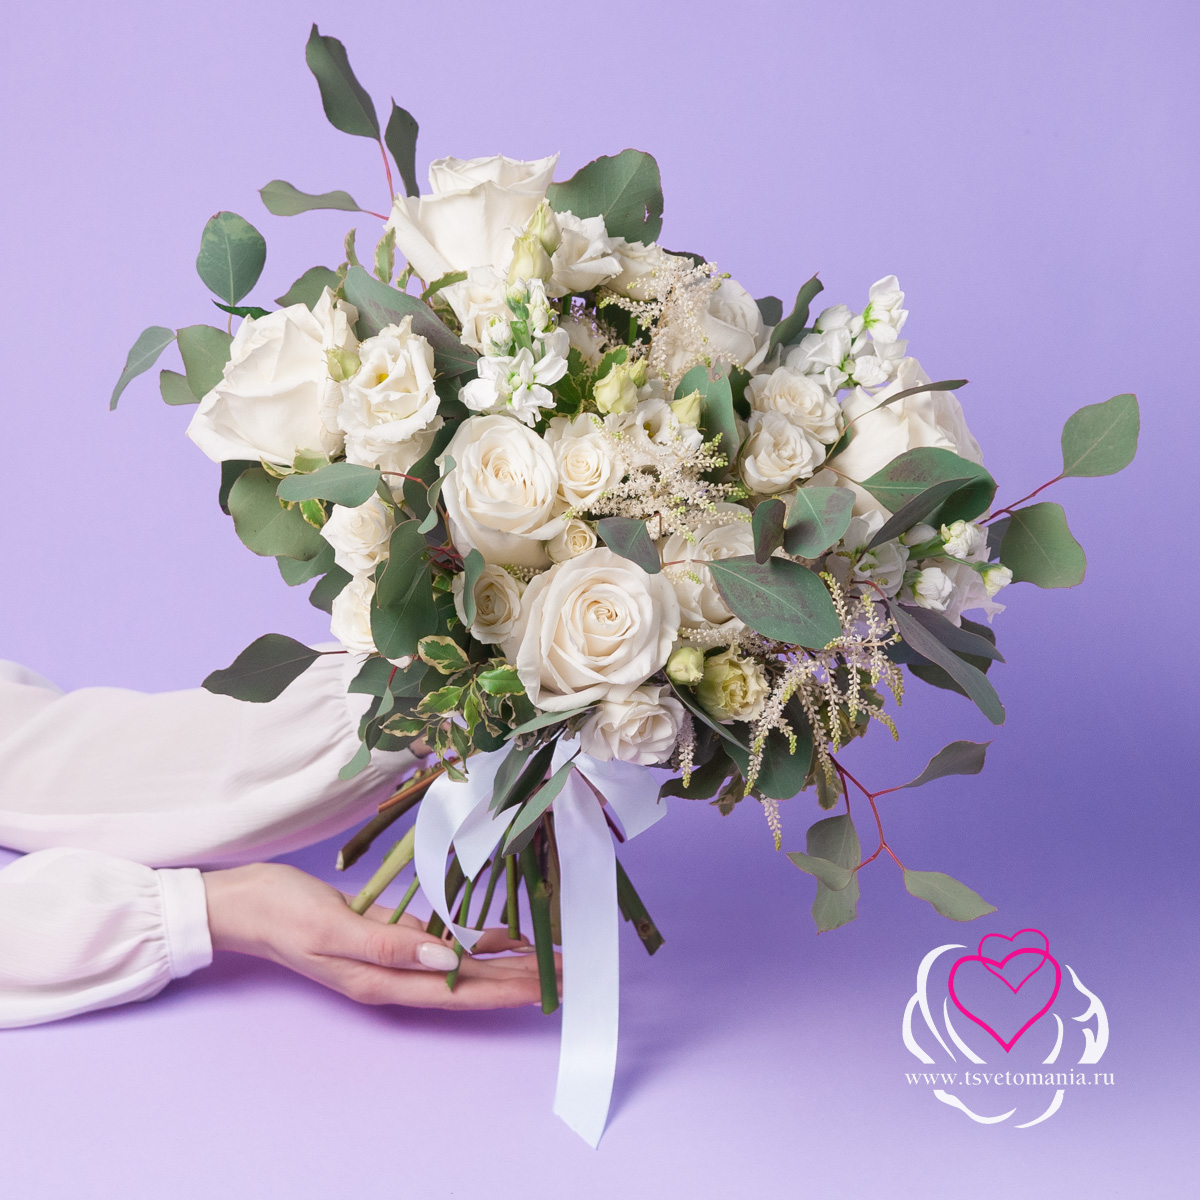 Белый свадебный букет из роз и астильбы свадебные аксессуары popodion свадебный букет цветочный женский свадебный букет